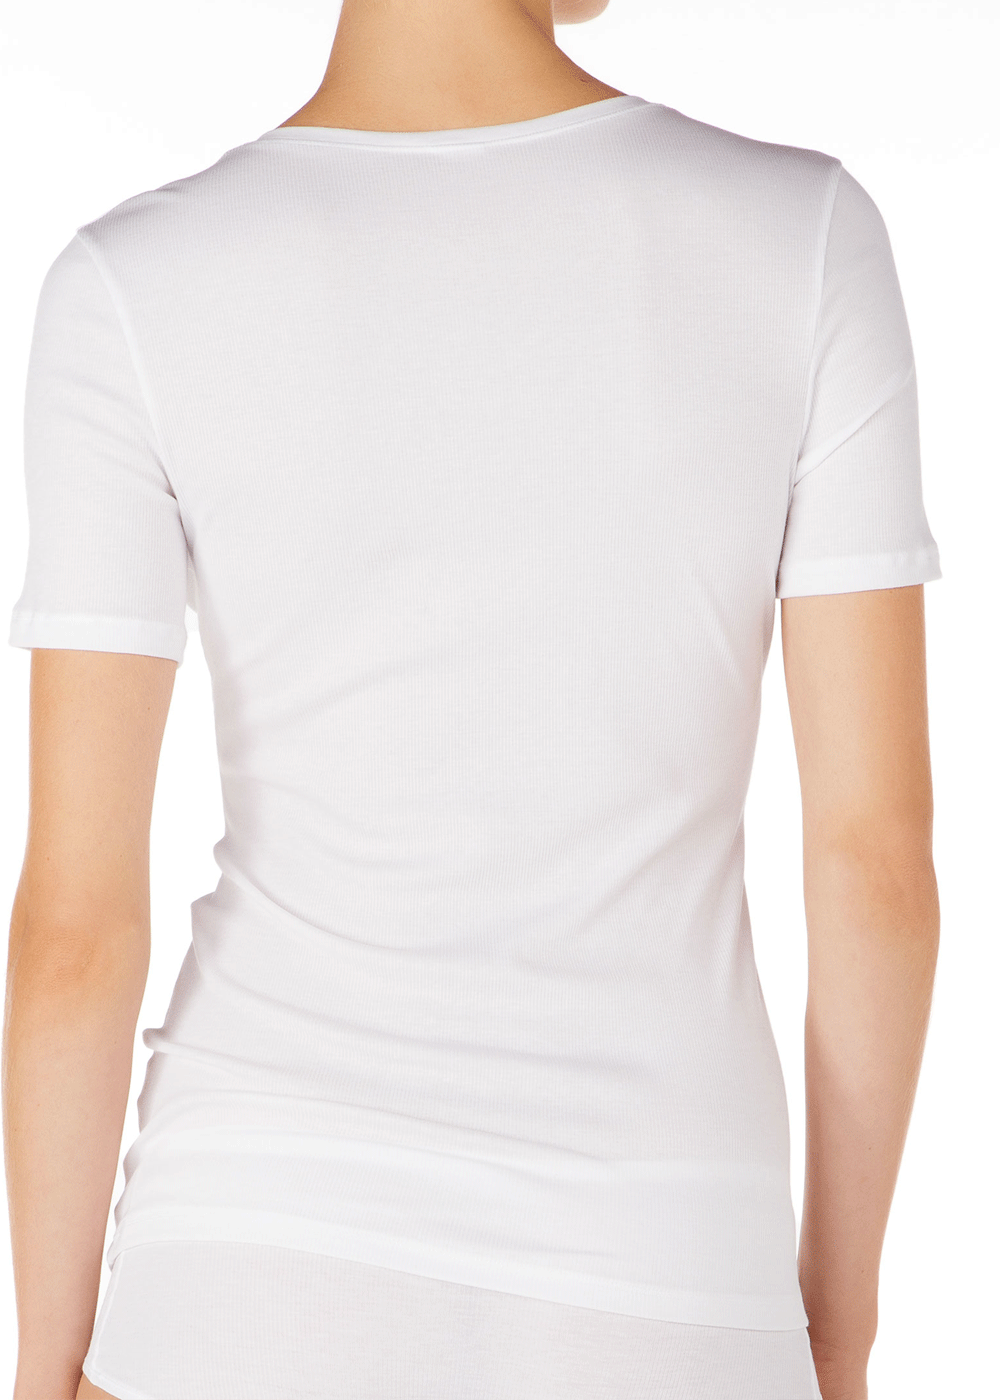 Tee-shirt Manches Courtes Boutonn Calida Blanc